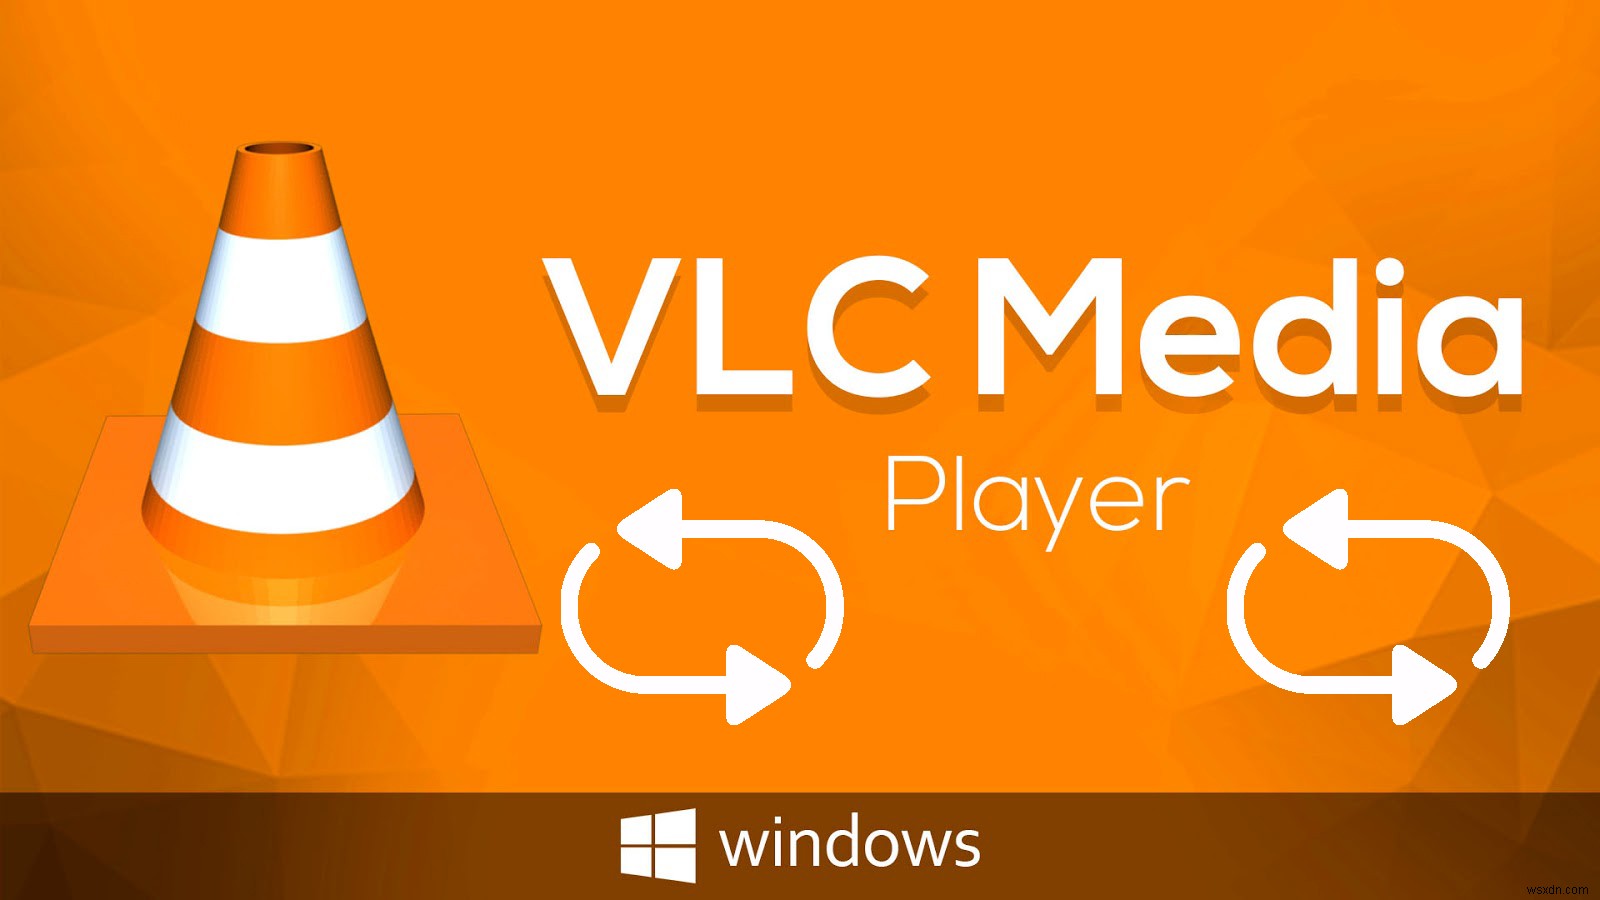 จะเล่นวิดีโอวนซ้ำหรือเล่นซ้ำโดยใช้ VLC Player ได้อย่างไร 